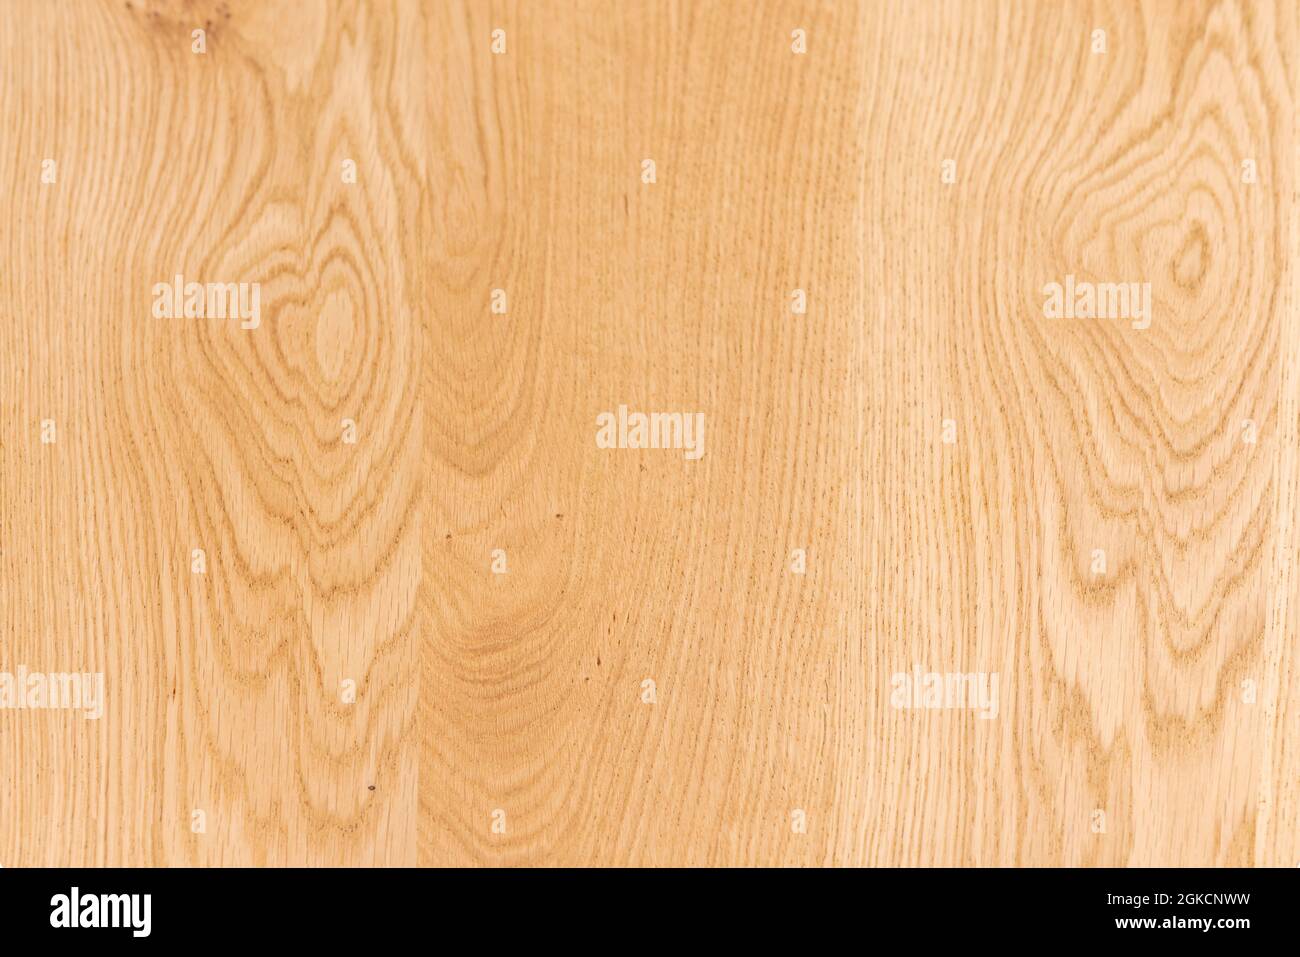 Fondo de madera de roble barnizado en tonos claros que muestran sus hermosas venas. Vectores de textura de madera clara para el fondo. Foto de stock